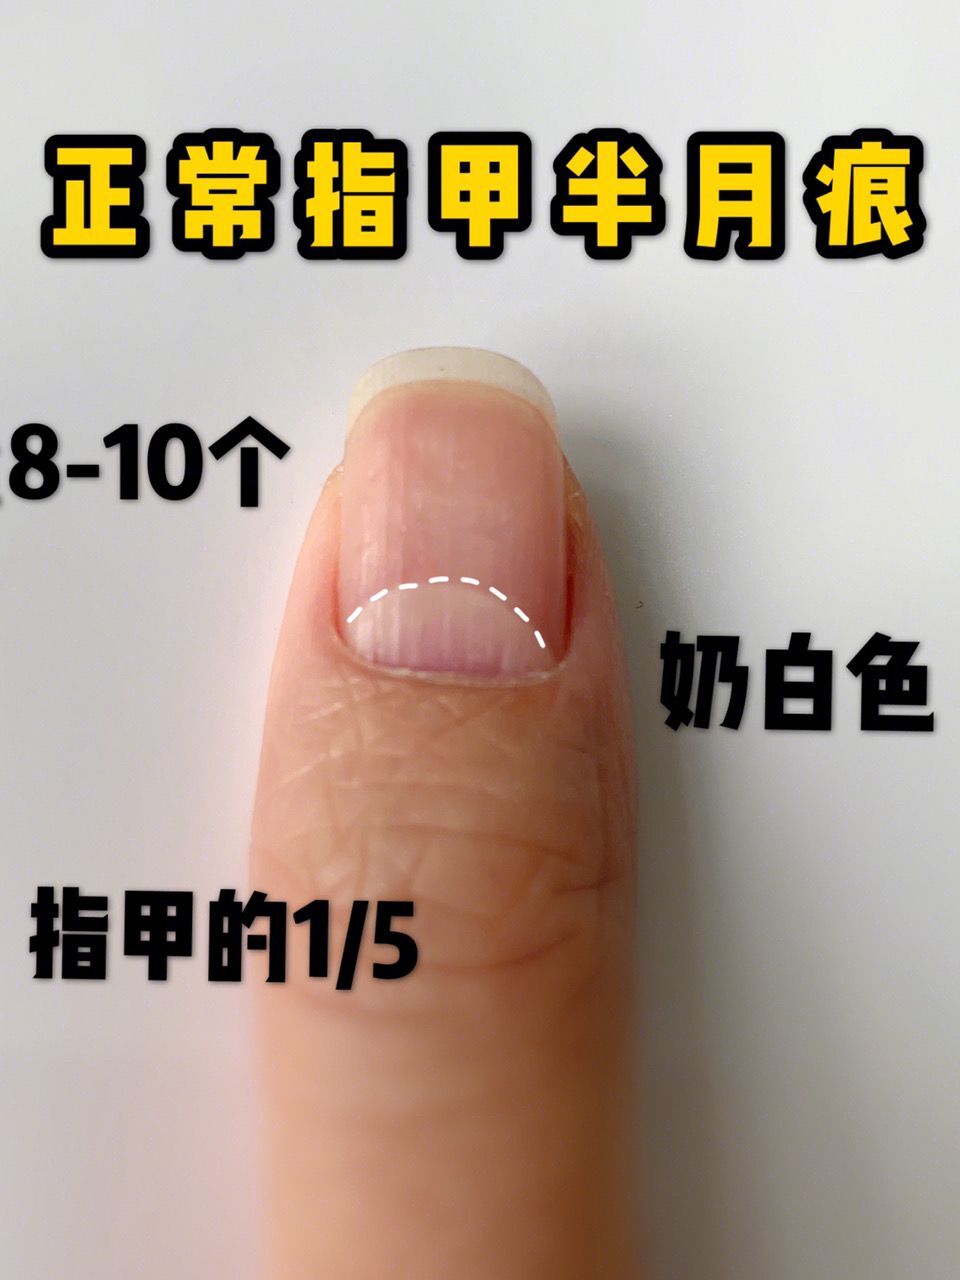 见正常指甲的半月痕相信很多小伙伴也都听说过手指甲上的月牙可以反映